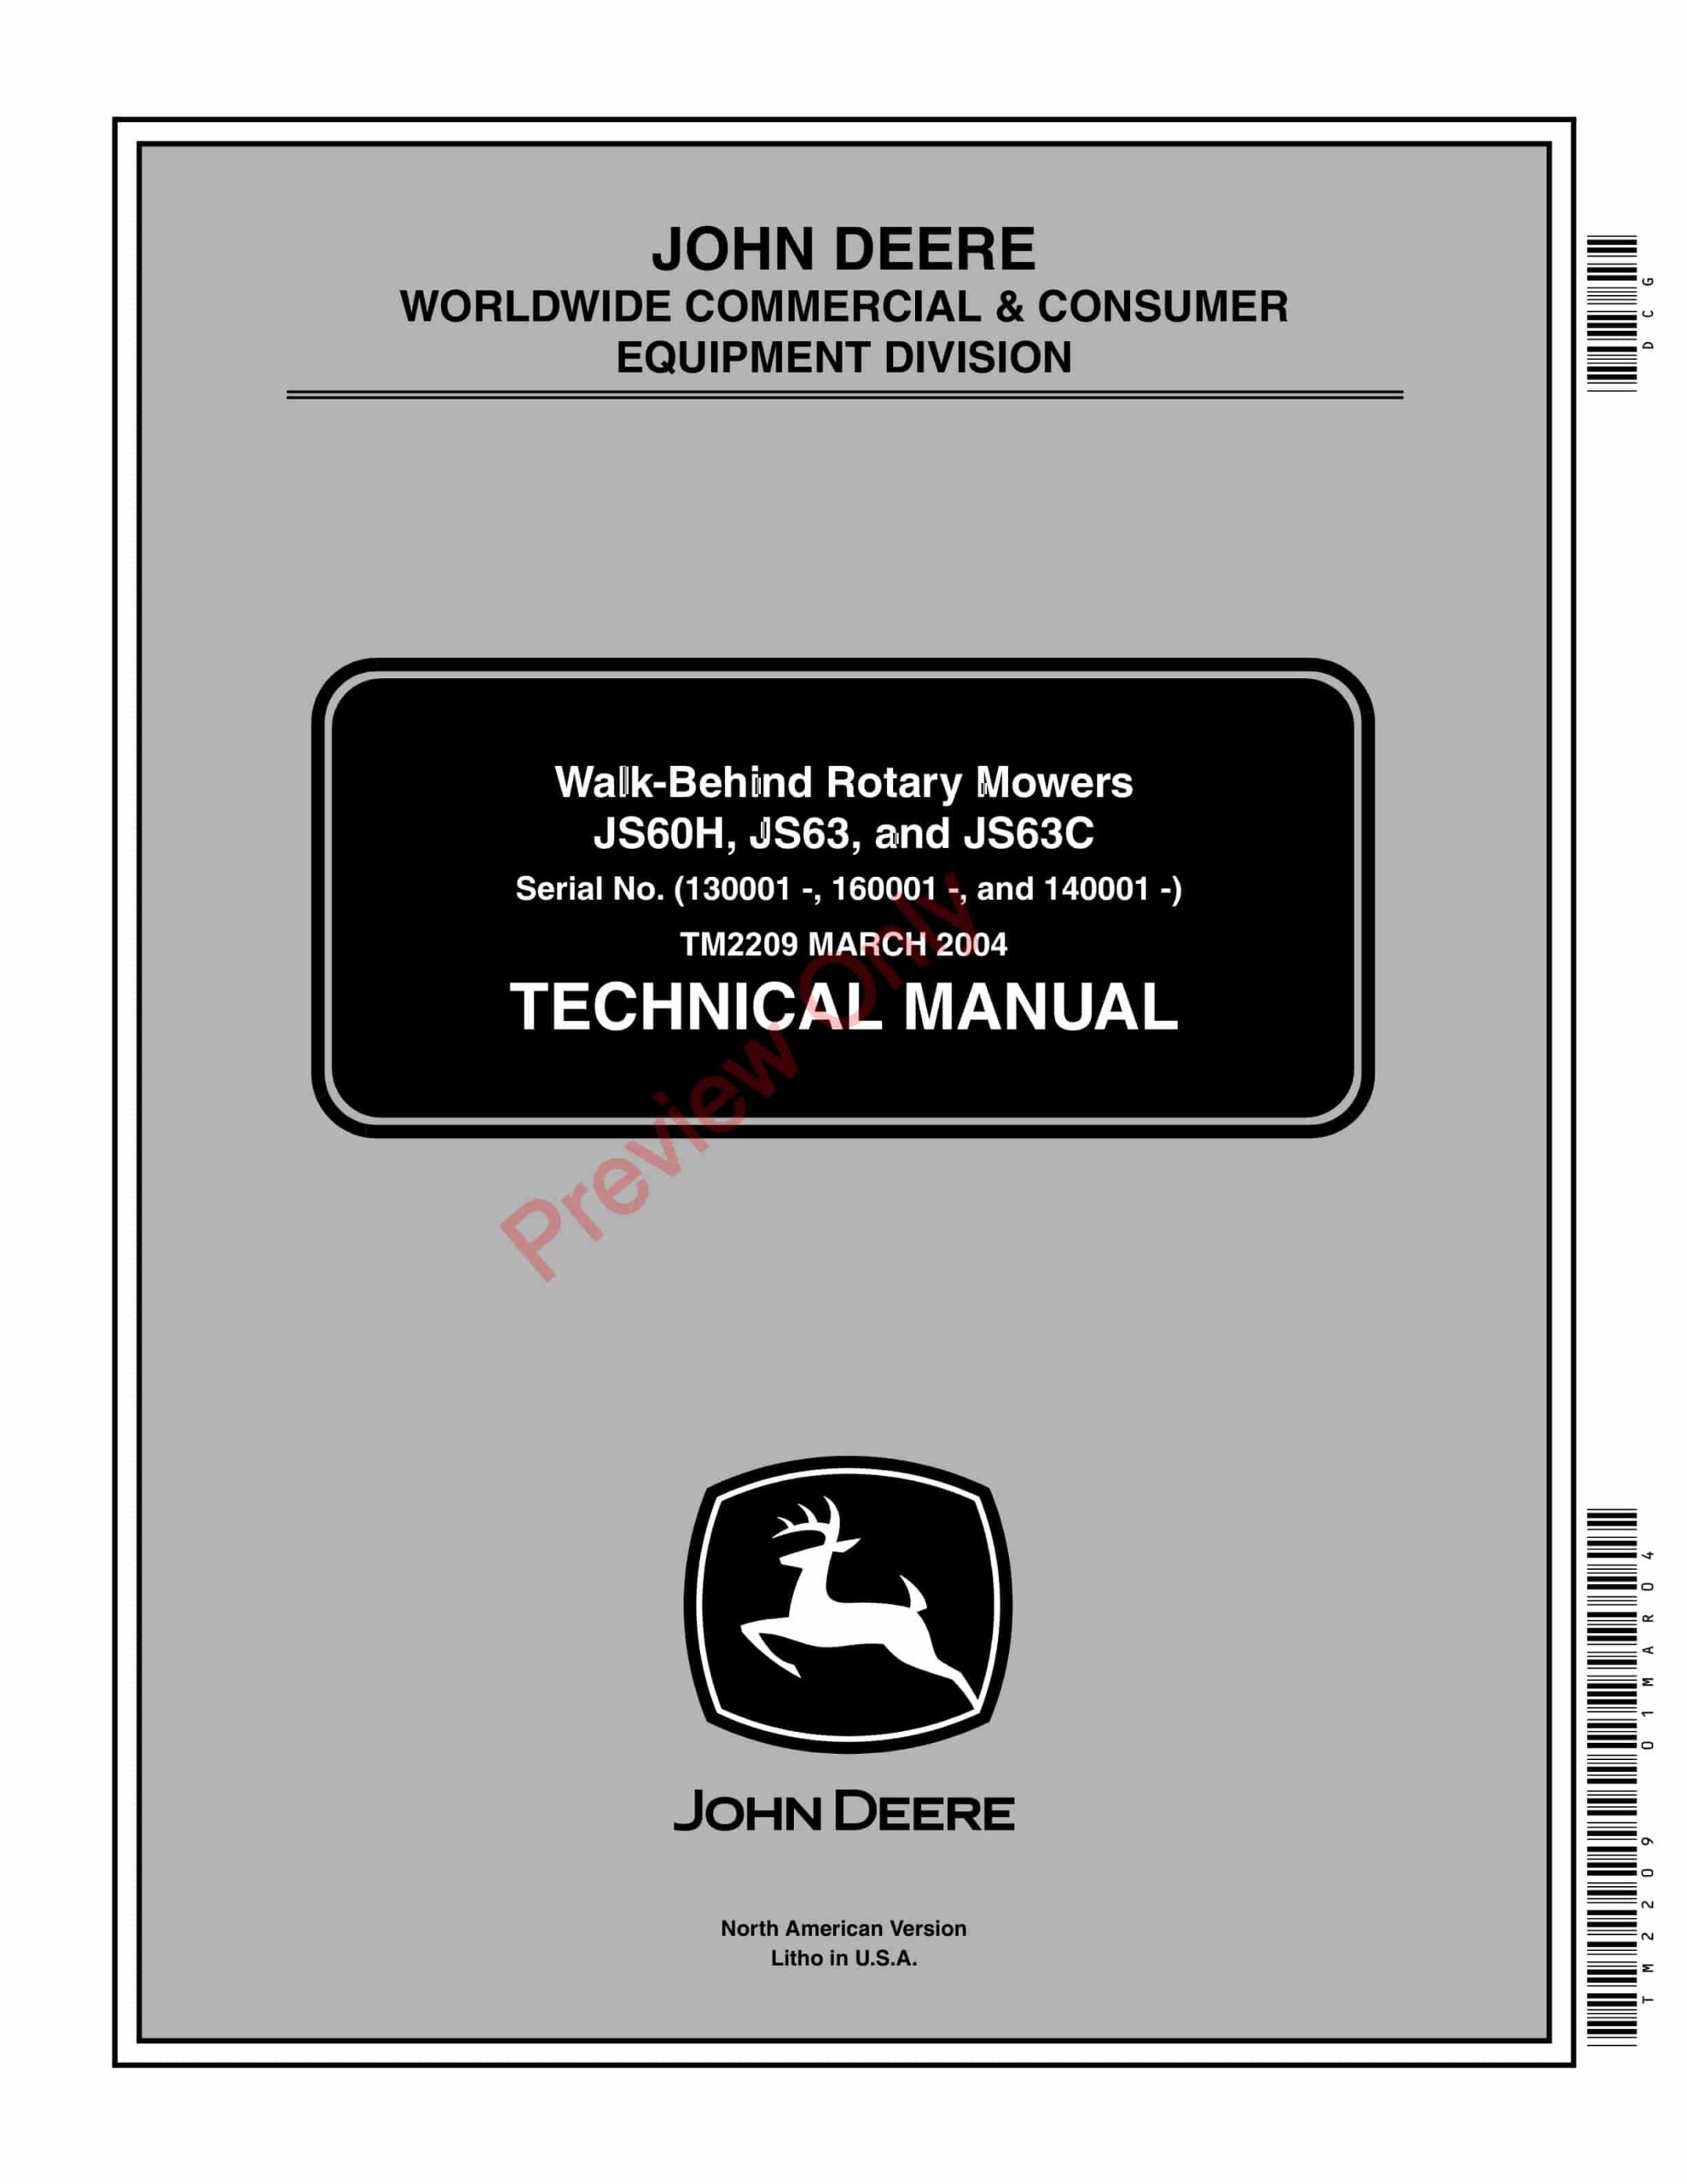 John Deere JS60H, JS63 and JS63C Walk-Behind Rotary Mowers Technical Manual TM2209 01MAR04-1